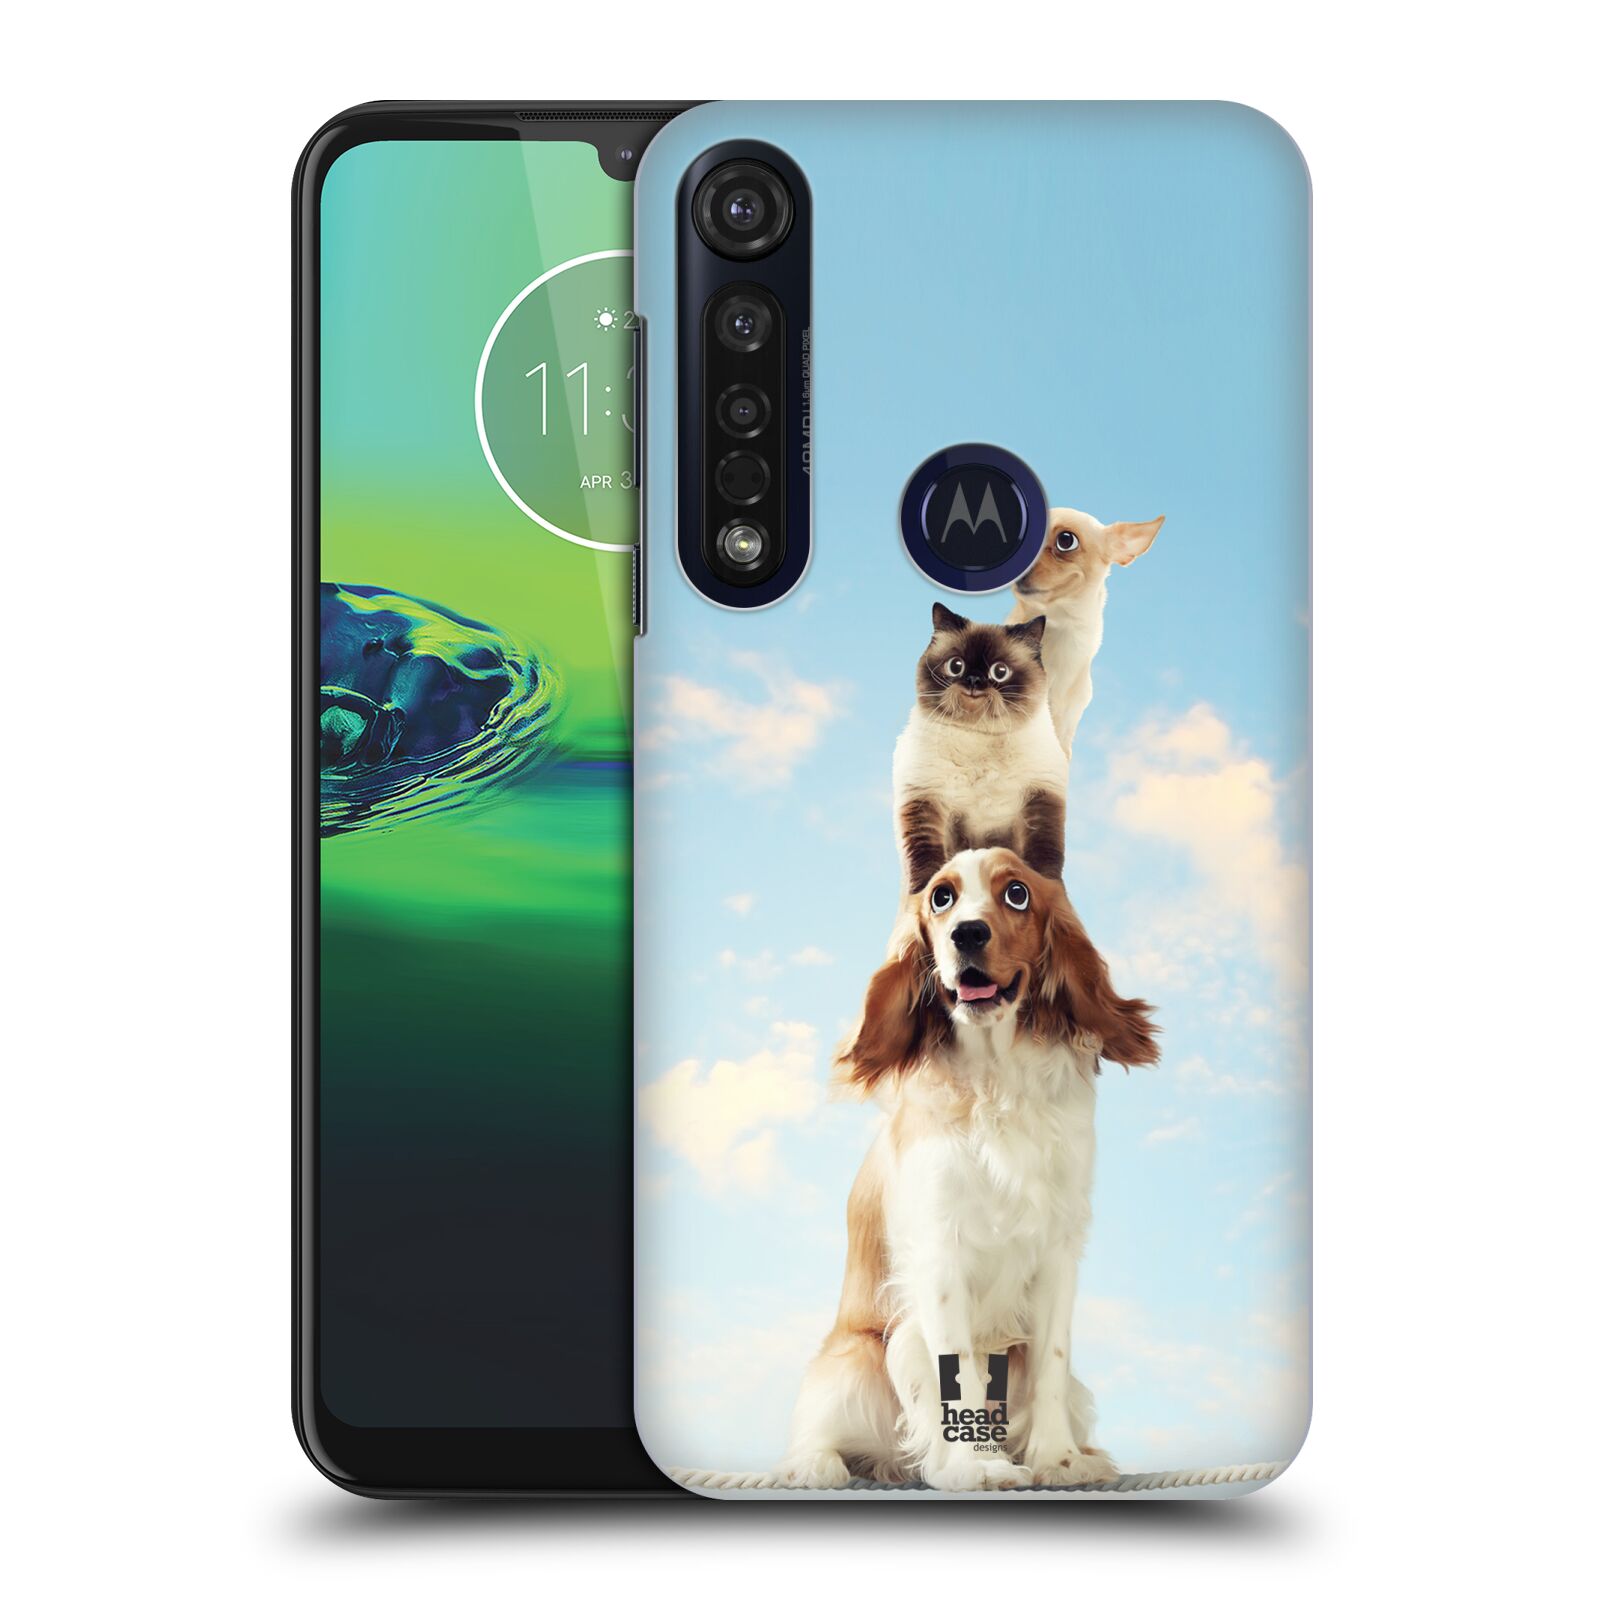 Pouzdro na mobil Motorola Moto G8 PLUS - HEAD CASE - vzor Legrační zvířátka zvířecí totem